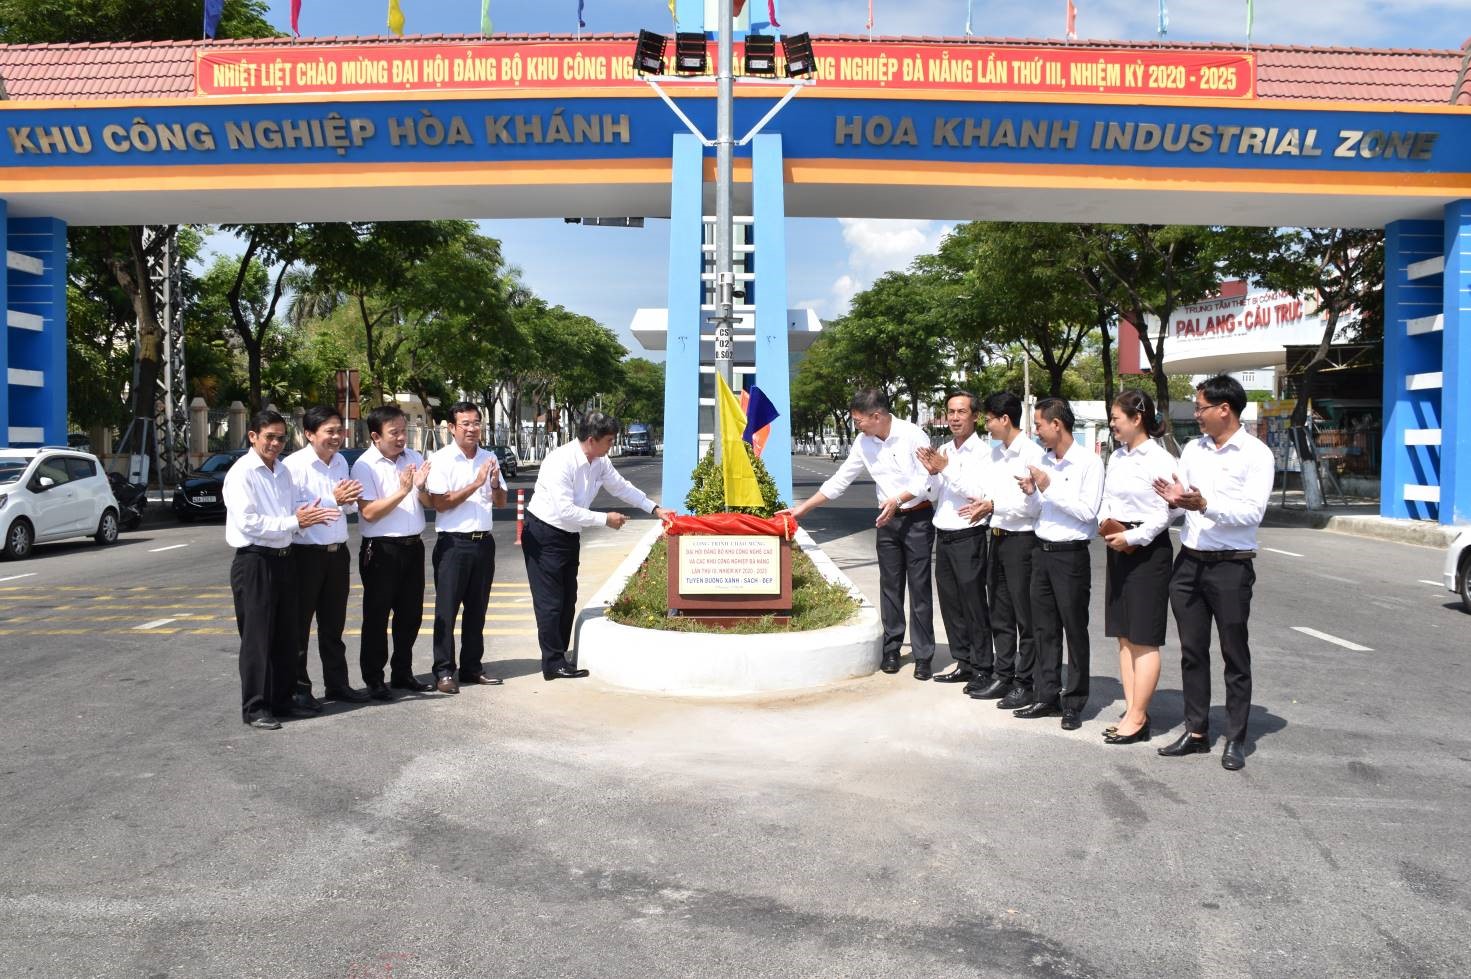 Danang Hi-Tech Park and Industrial Zones Authority Website